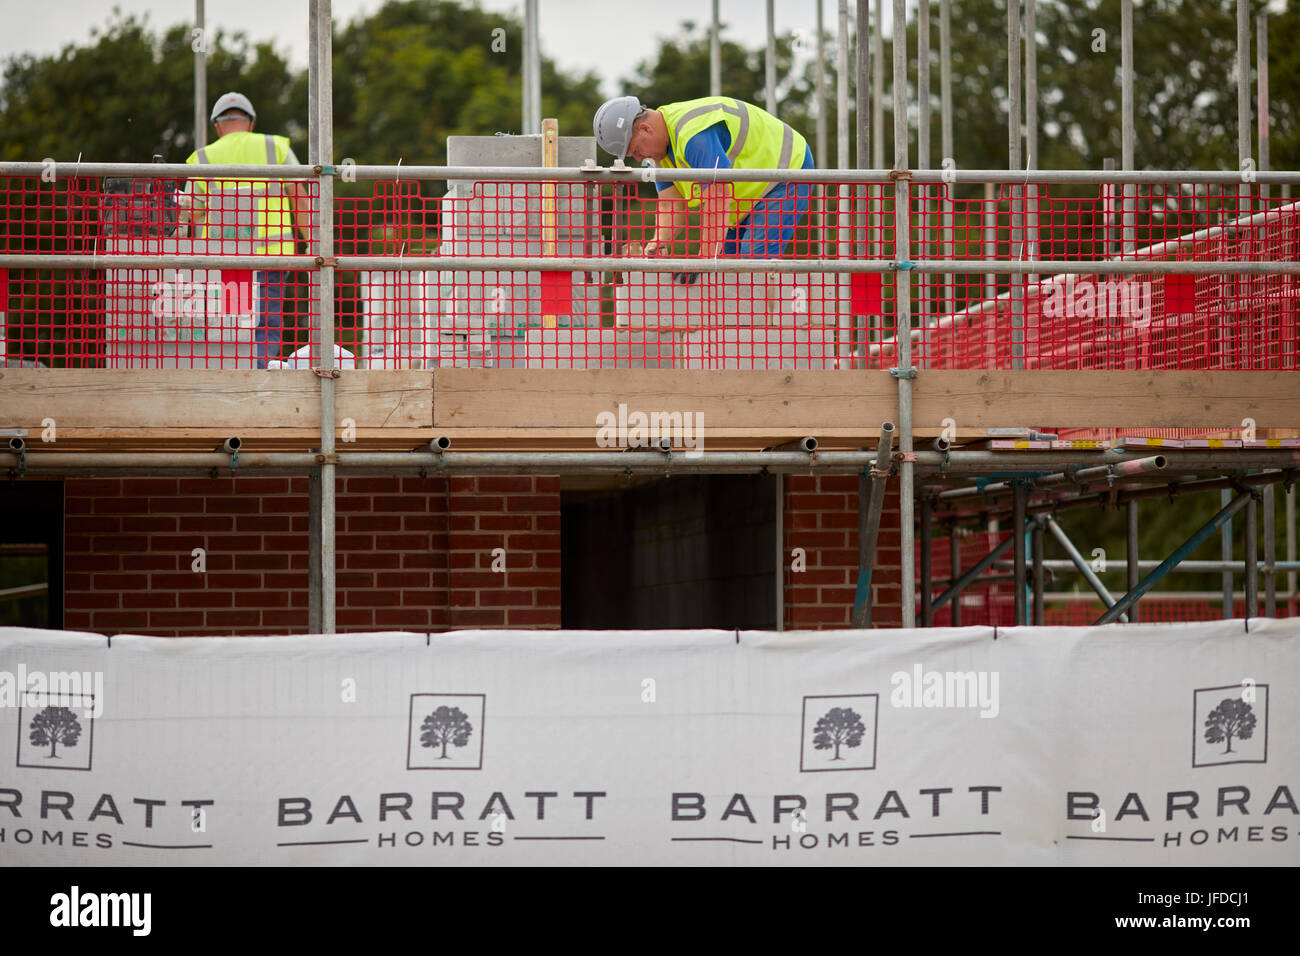 Barratt Homes construction développement ouvriers site poser des briques à Sandbatch, Cheshire. Banque D'Images